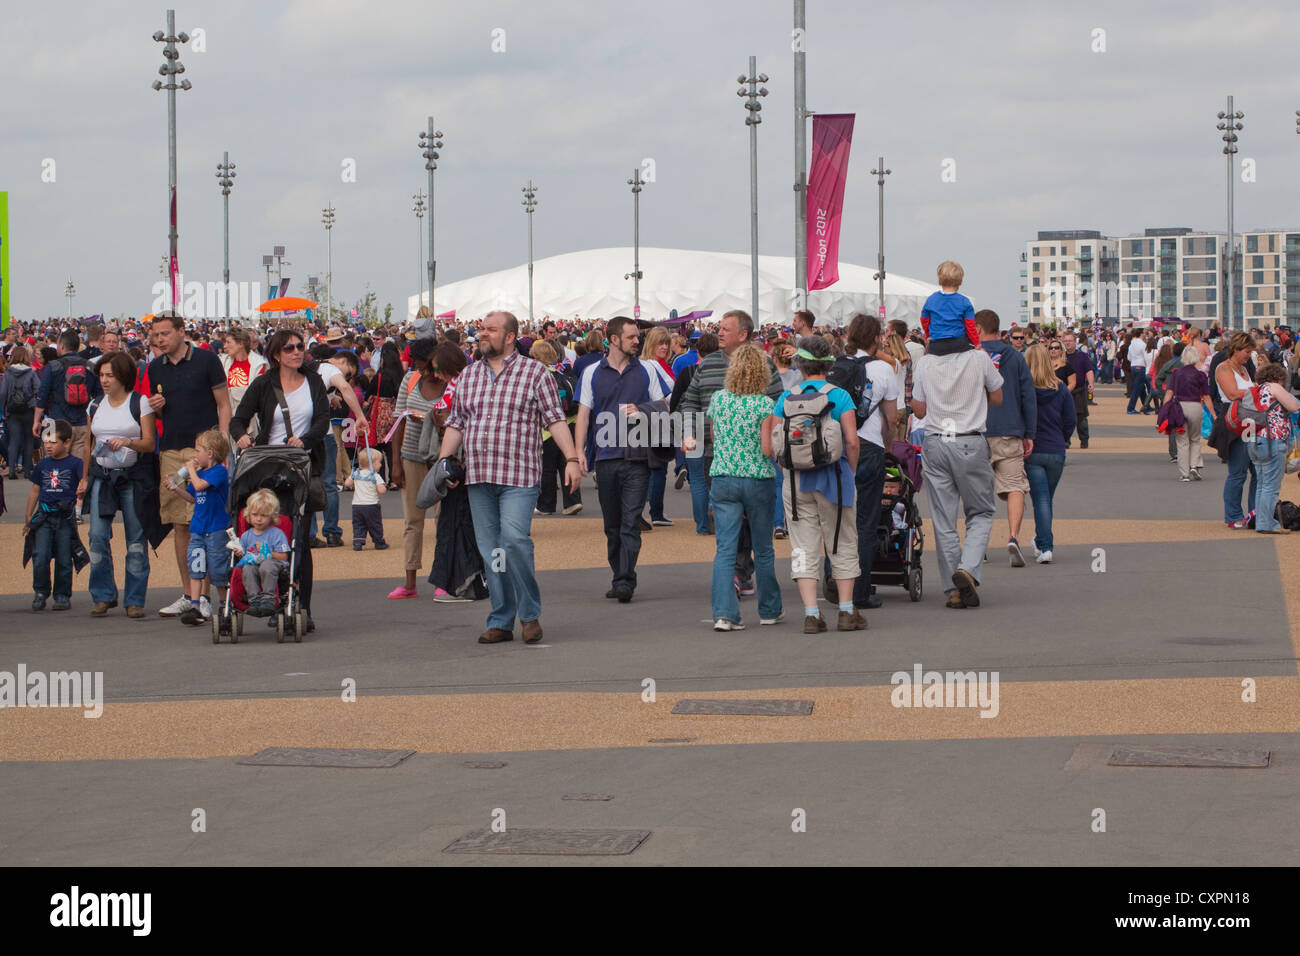 Les gens (Homo sapiens). Les foules. Balade autour du Parc olympique. Londres. L'Angleterre. UK Banque D'Images